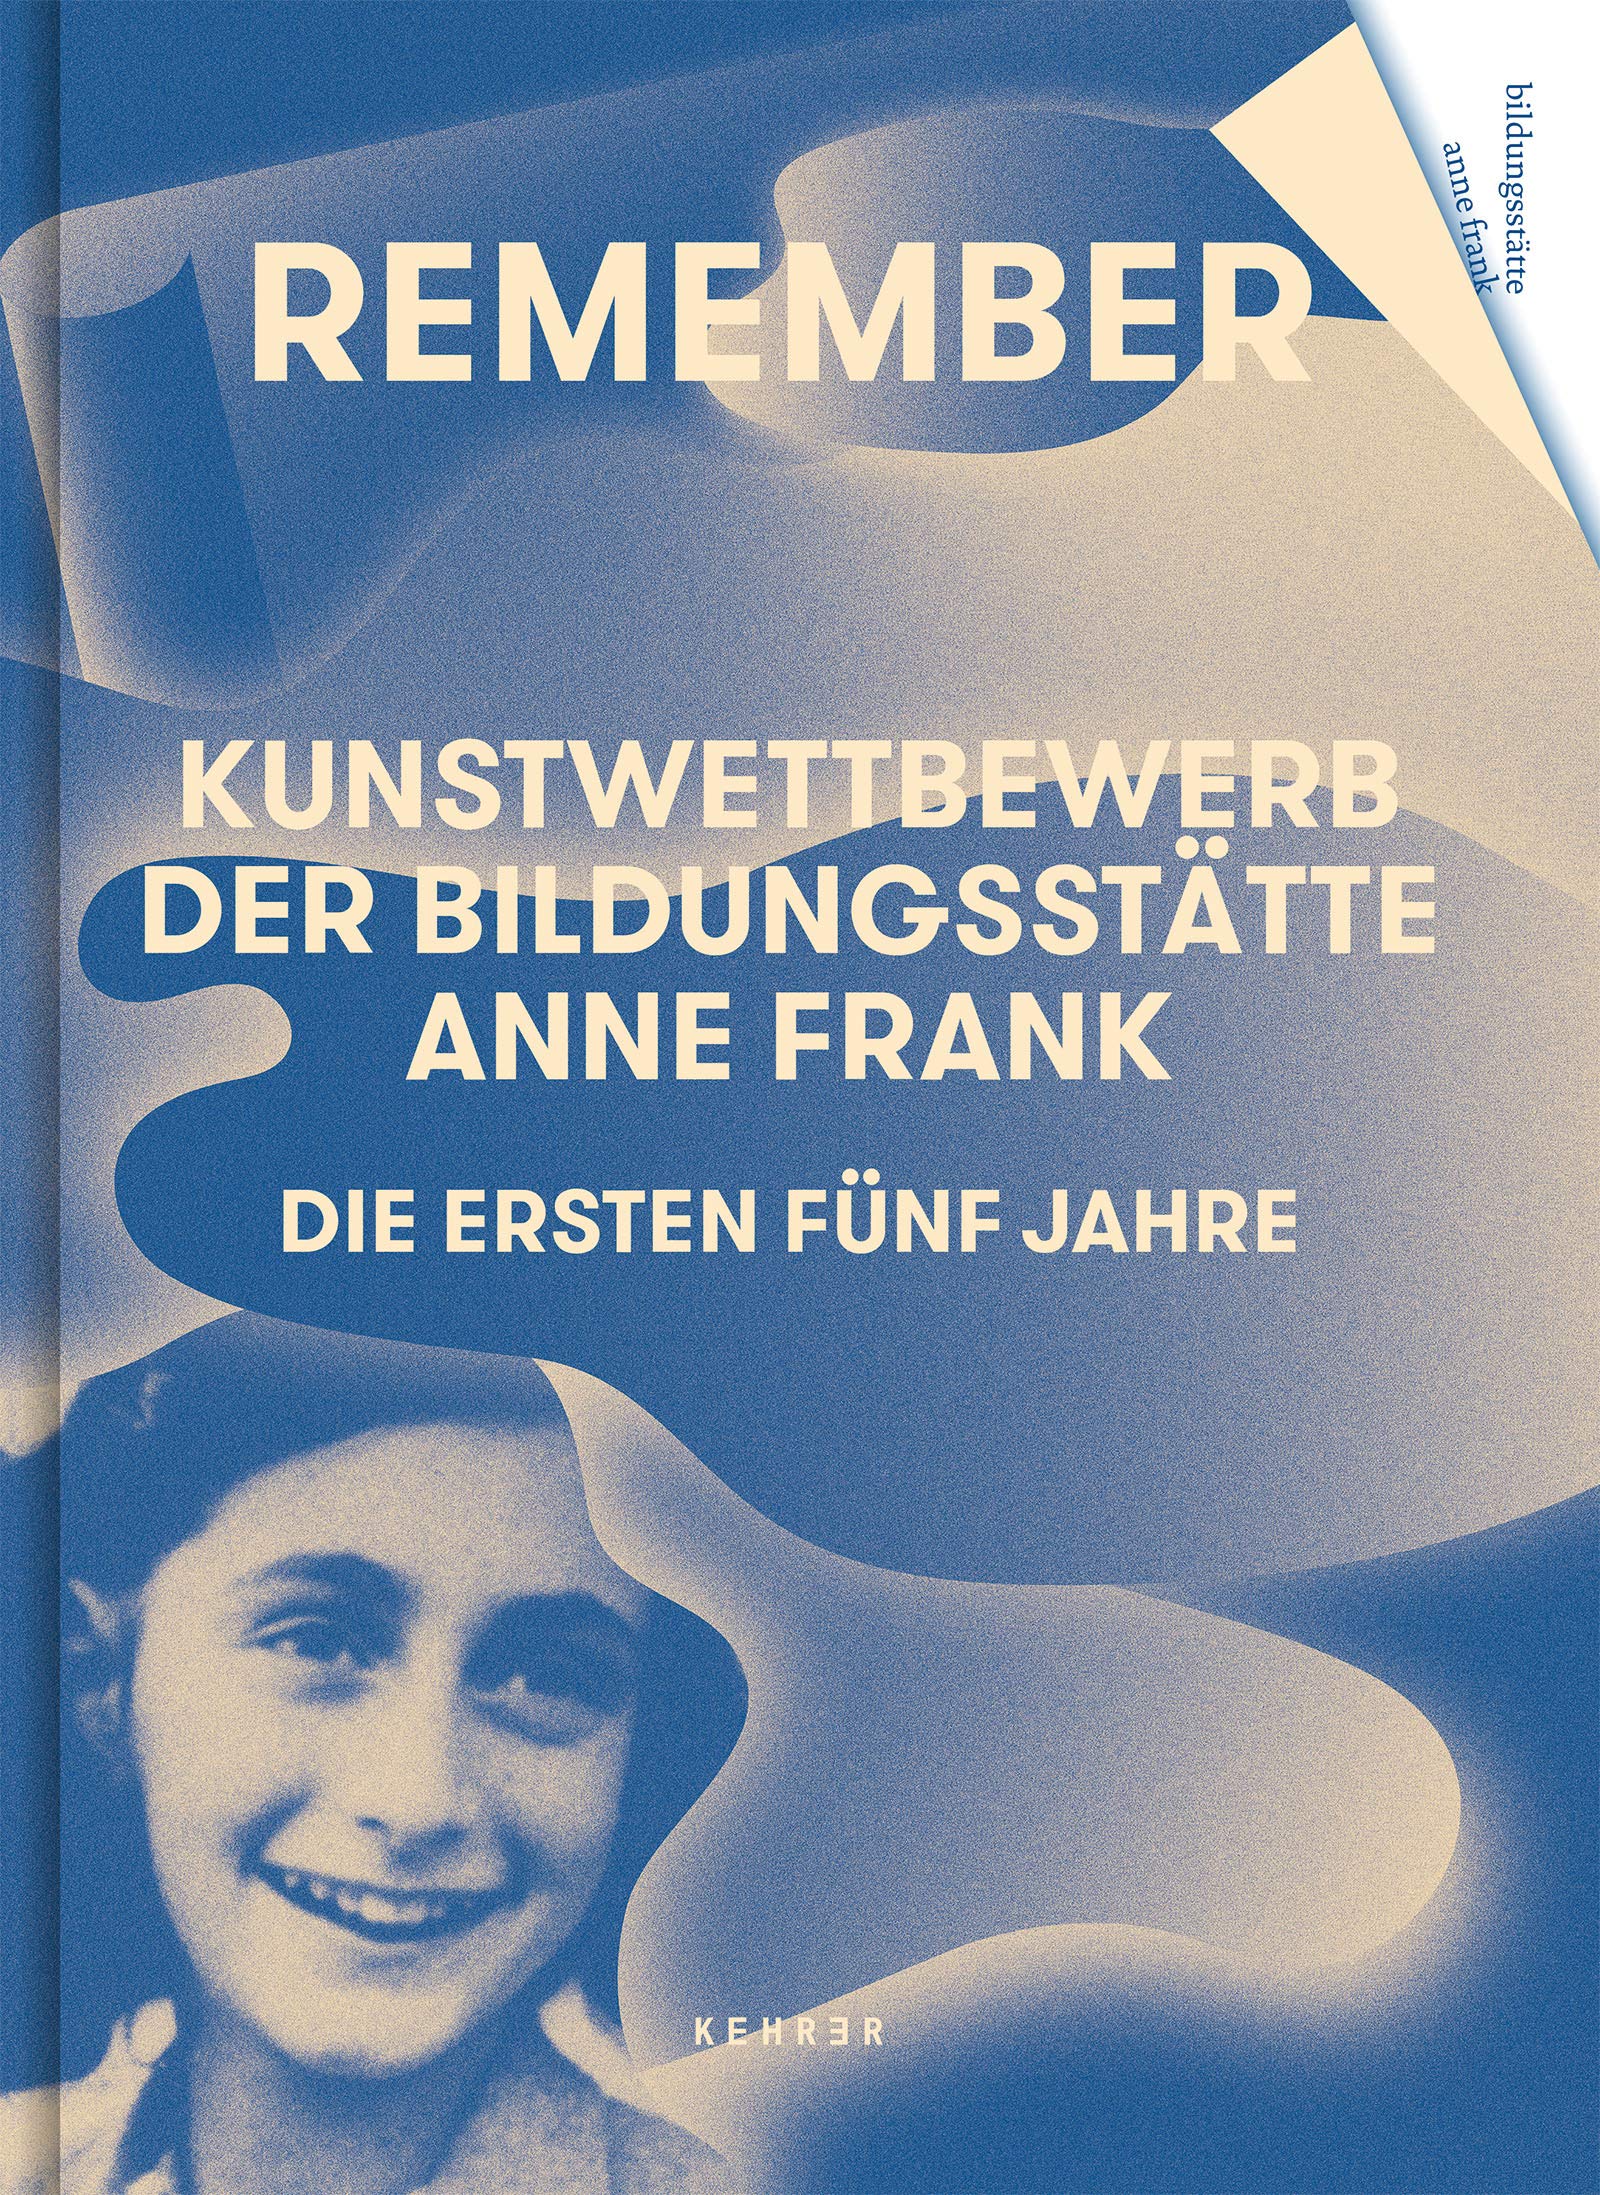 Remember | Anne Frank Educational Center